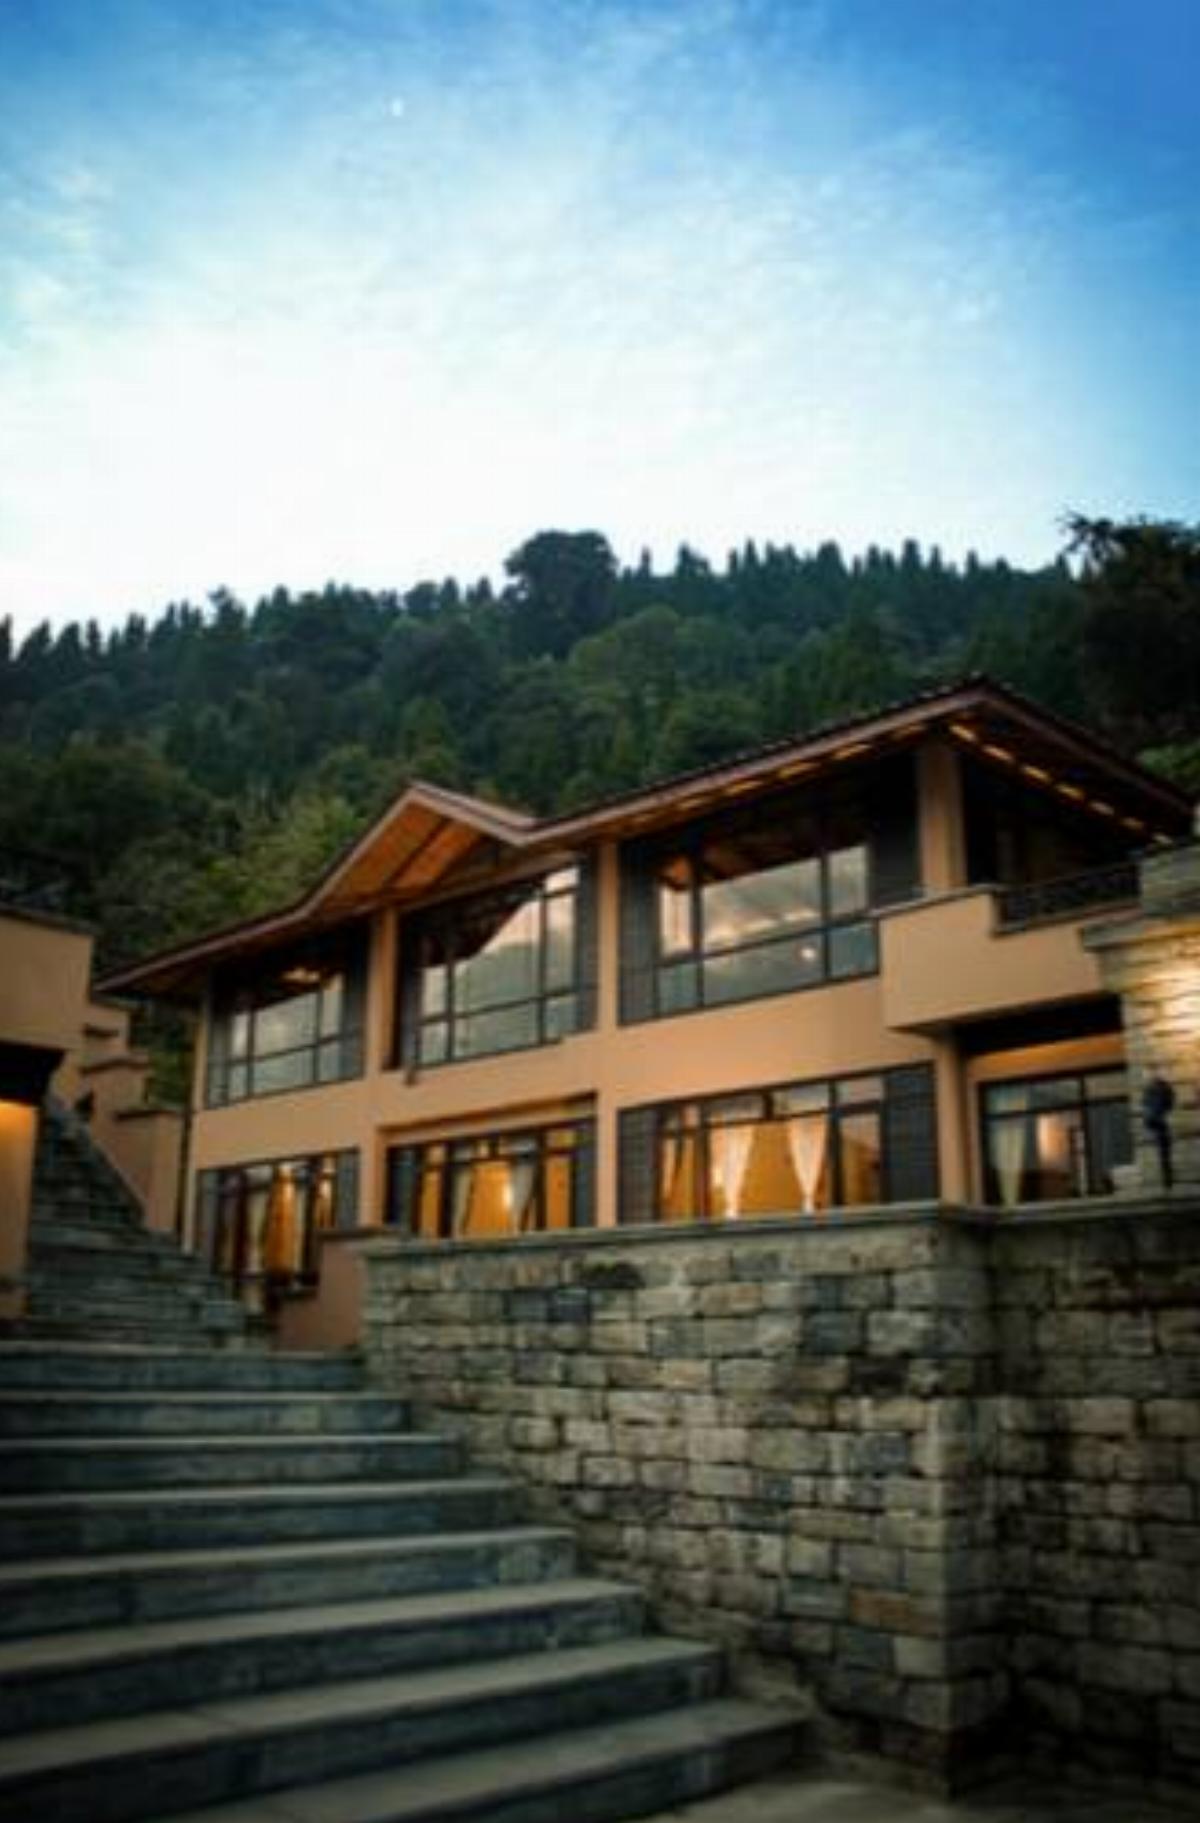 The Chumbi Mountain Retreat & Spa